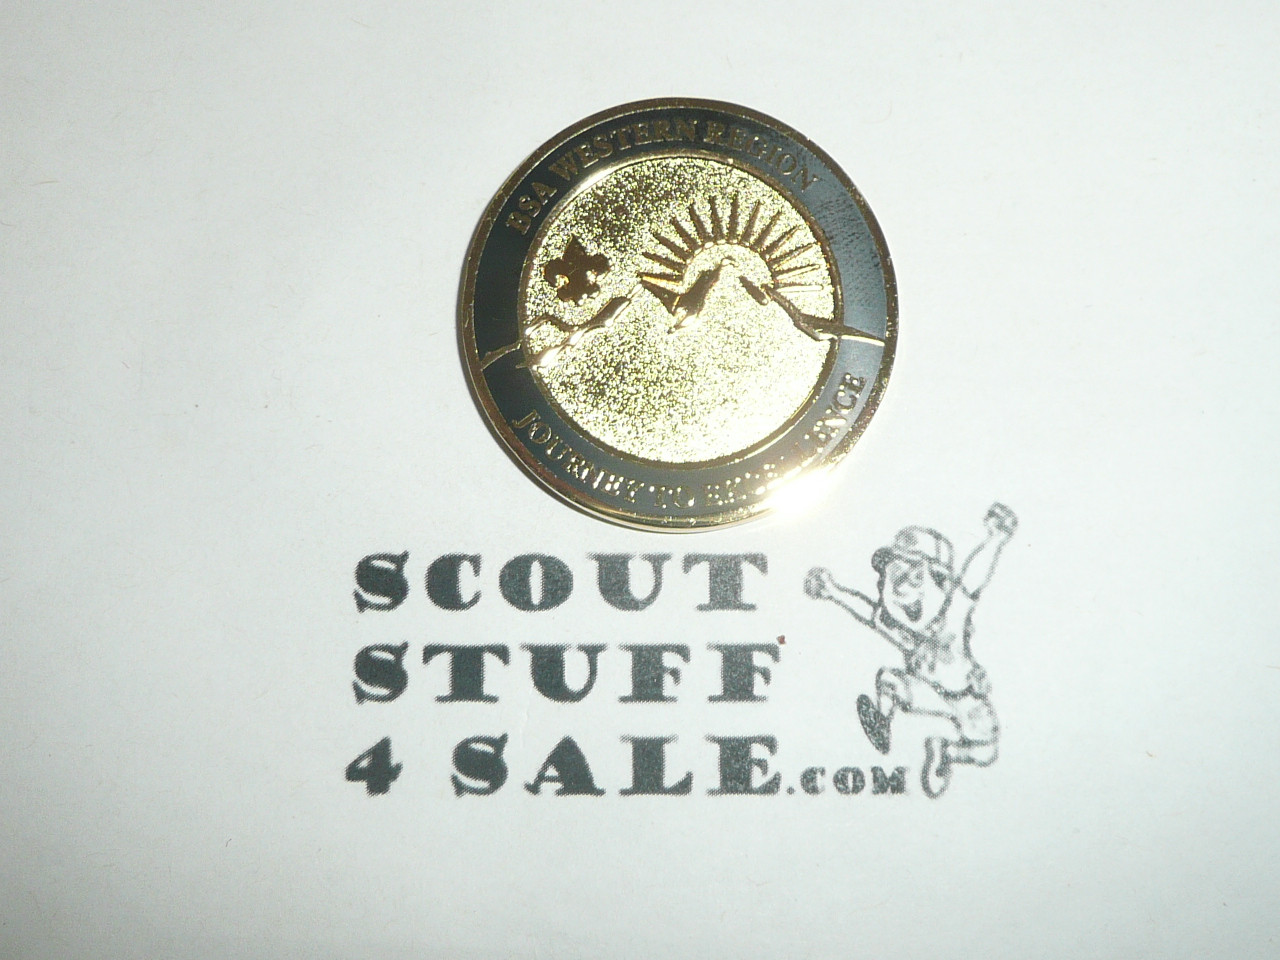 Western Region Challenge Coin - Boy Scout